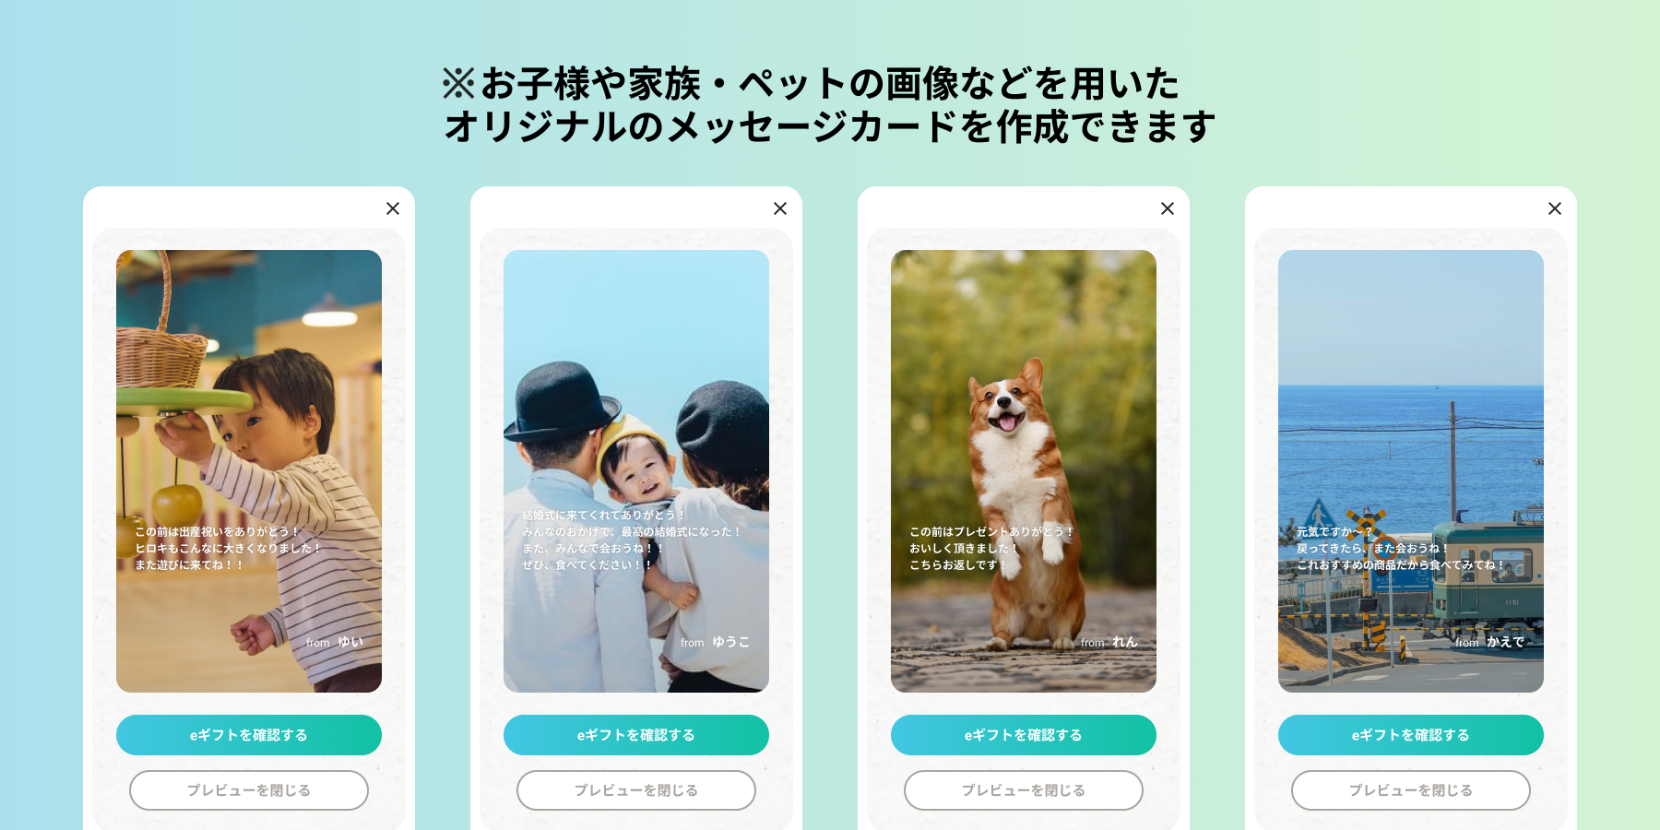 お子様や家族・ペットの画像などを用いたオリジナルのメッセージカードを作成できます